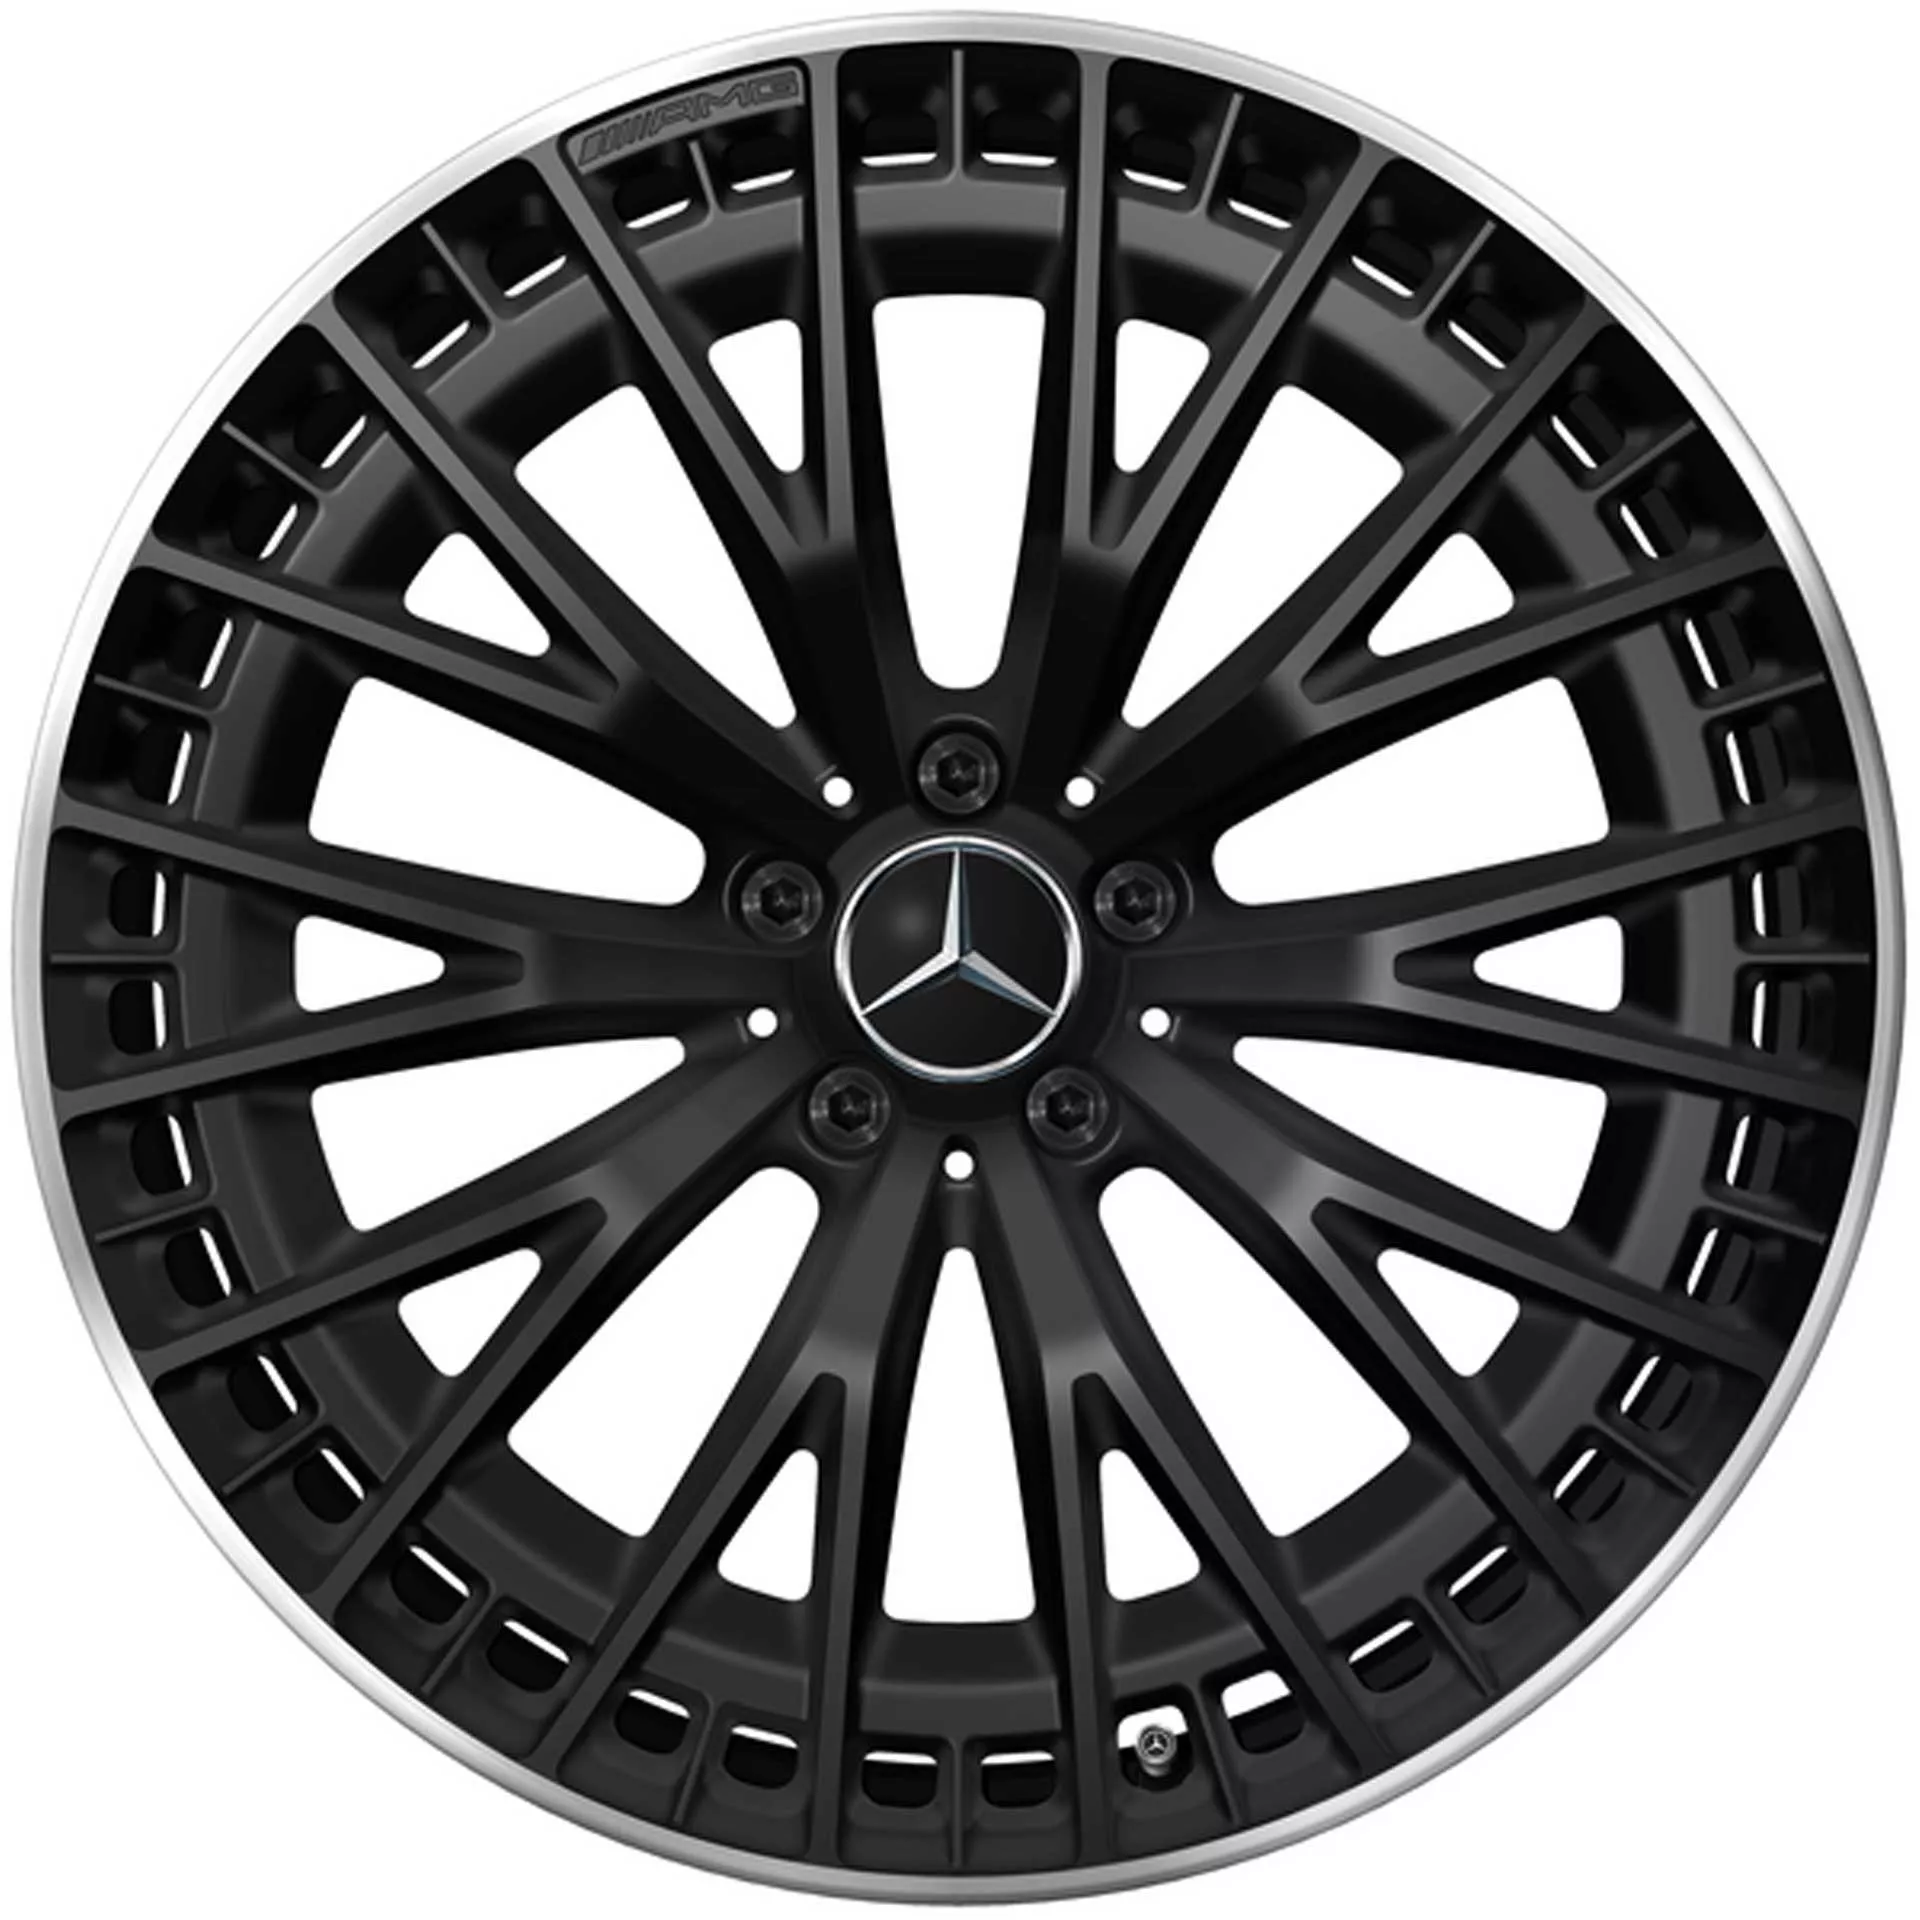 Mercedes-AMG Vielspeichen-Rad 21 Zoll Leichtmetallfelge EQE schwarz Felgenhorn glanzgedreht A29540130007X71